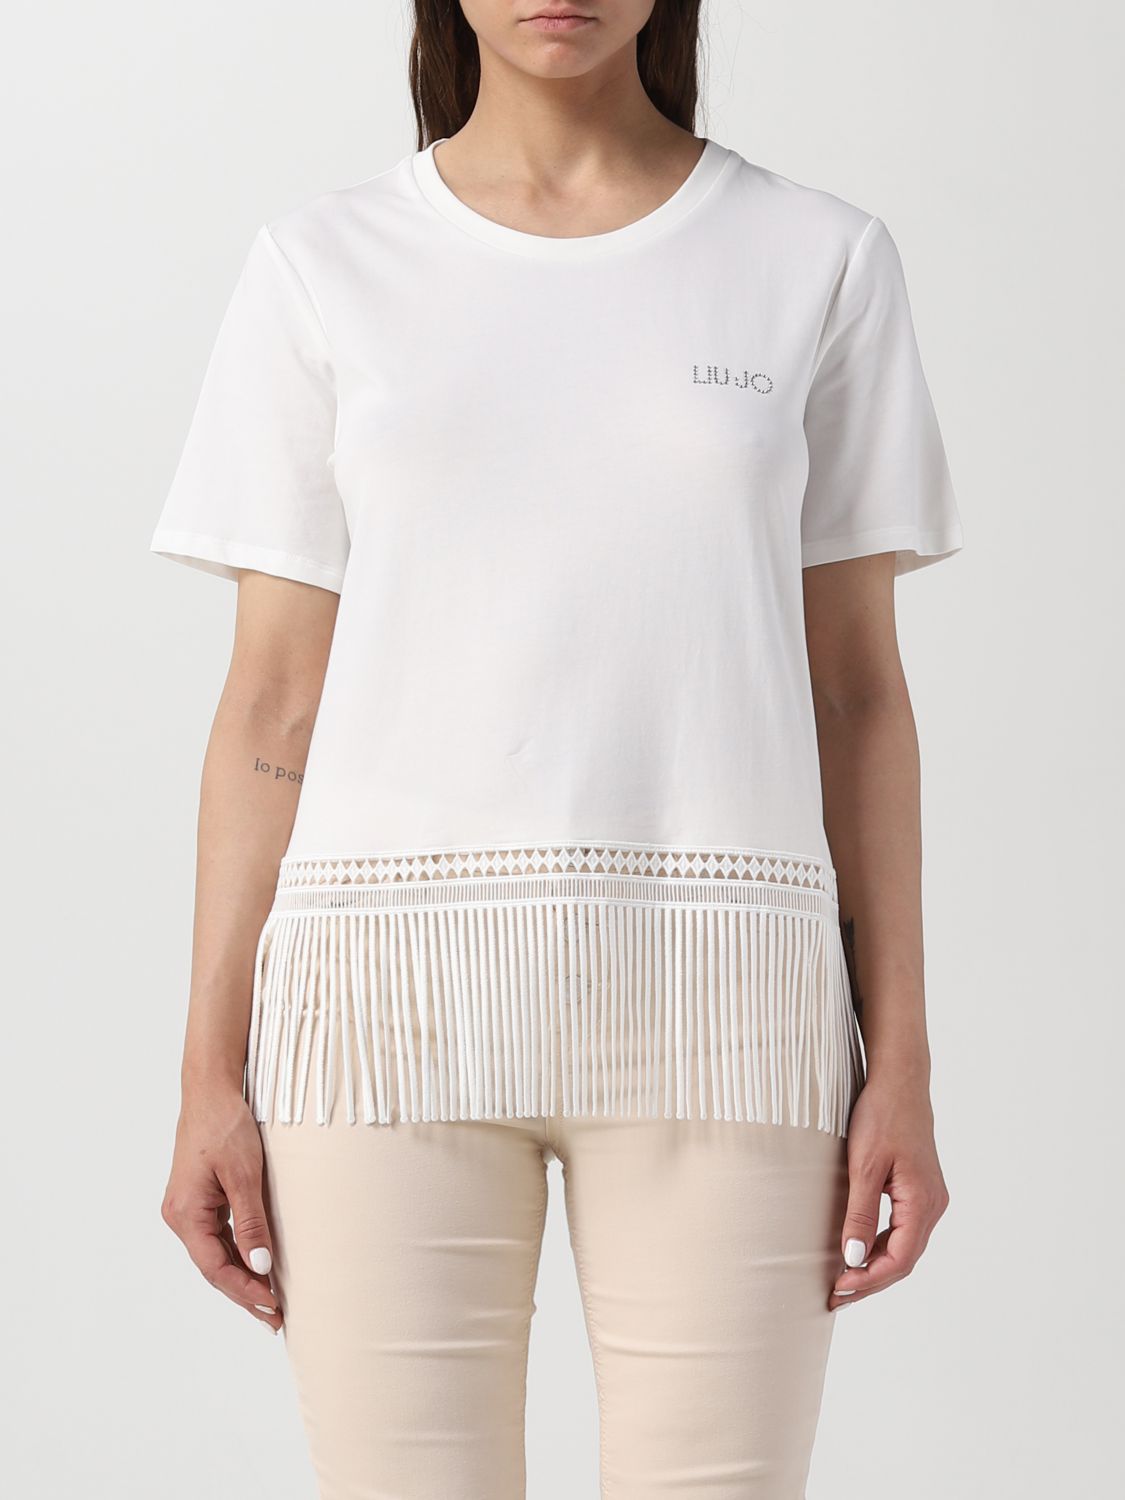 LIU JO: t-shirt for woman - White | Liu Jo t-shirt TA3150J5003 online ...